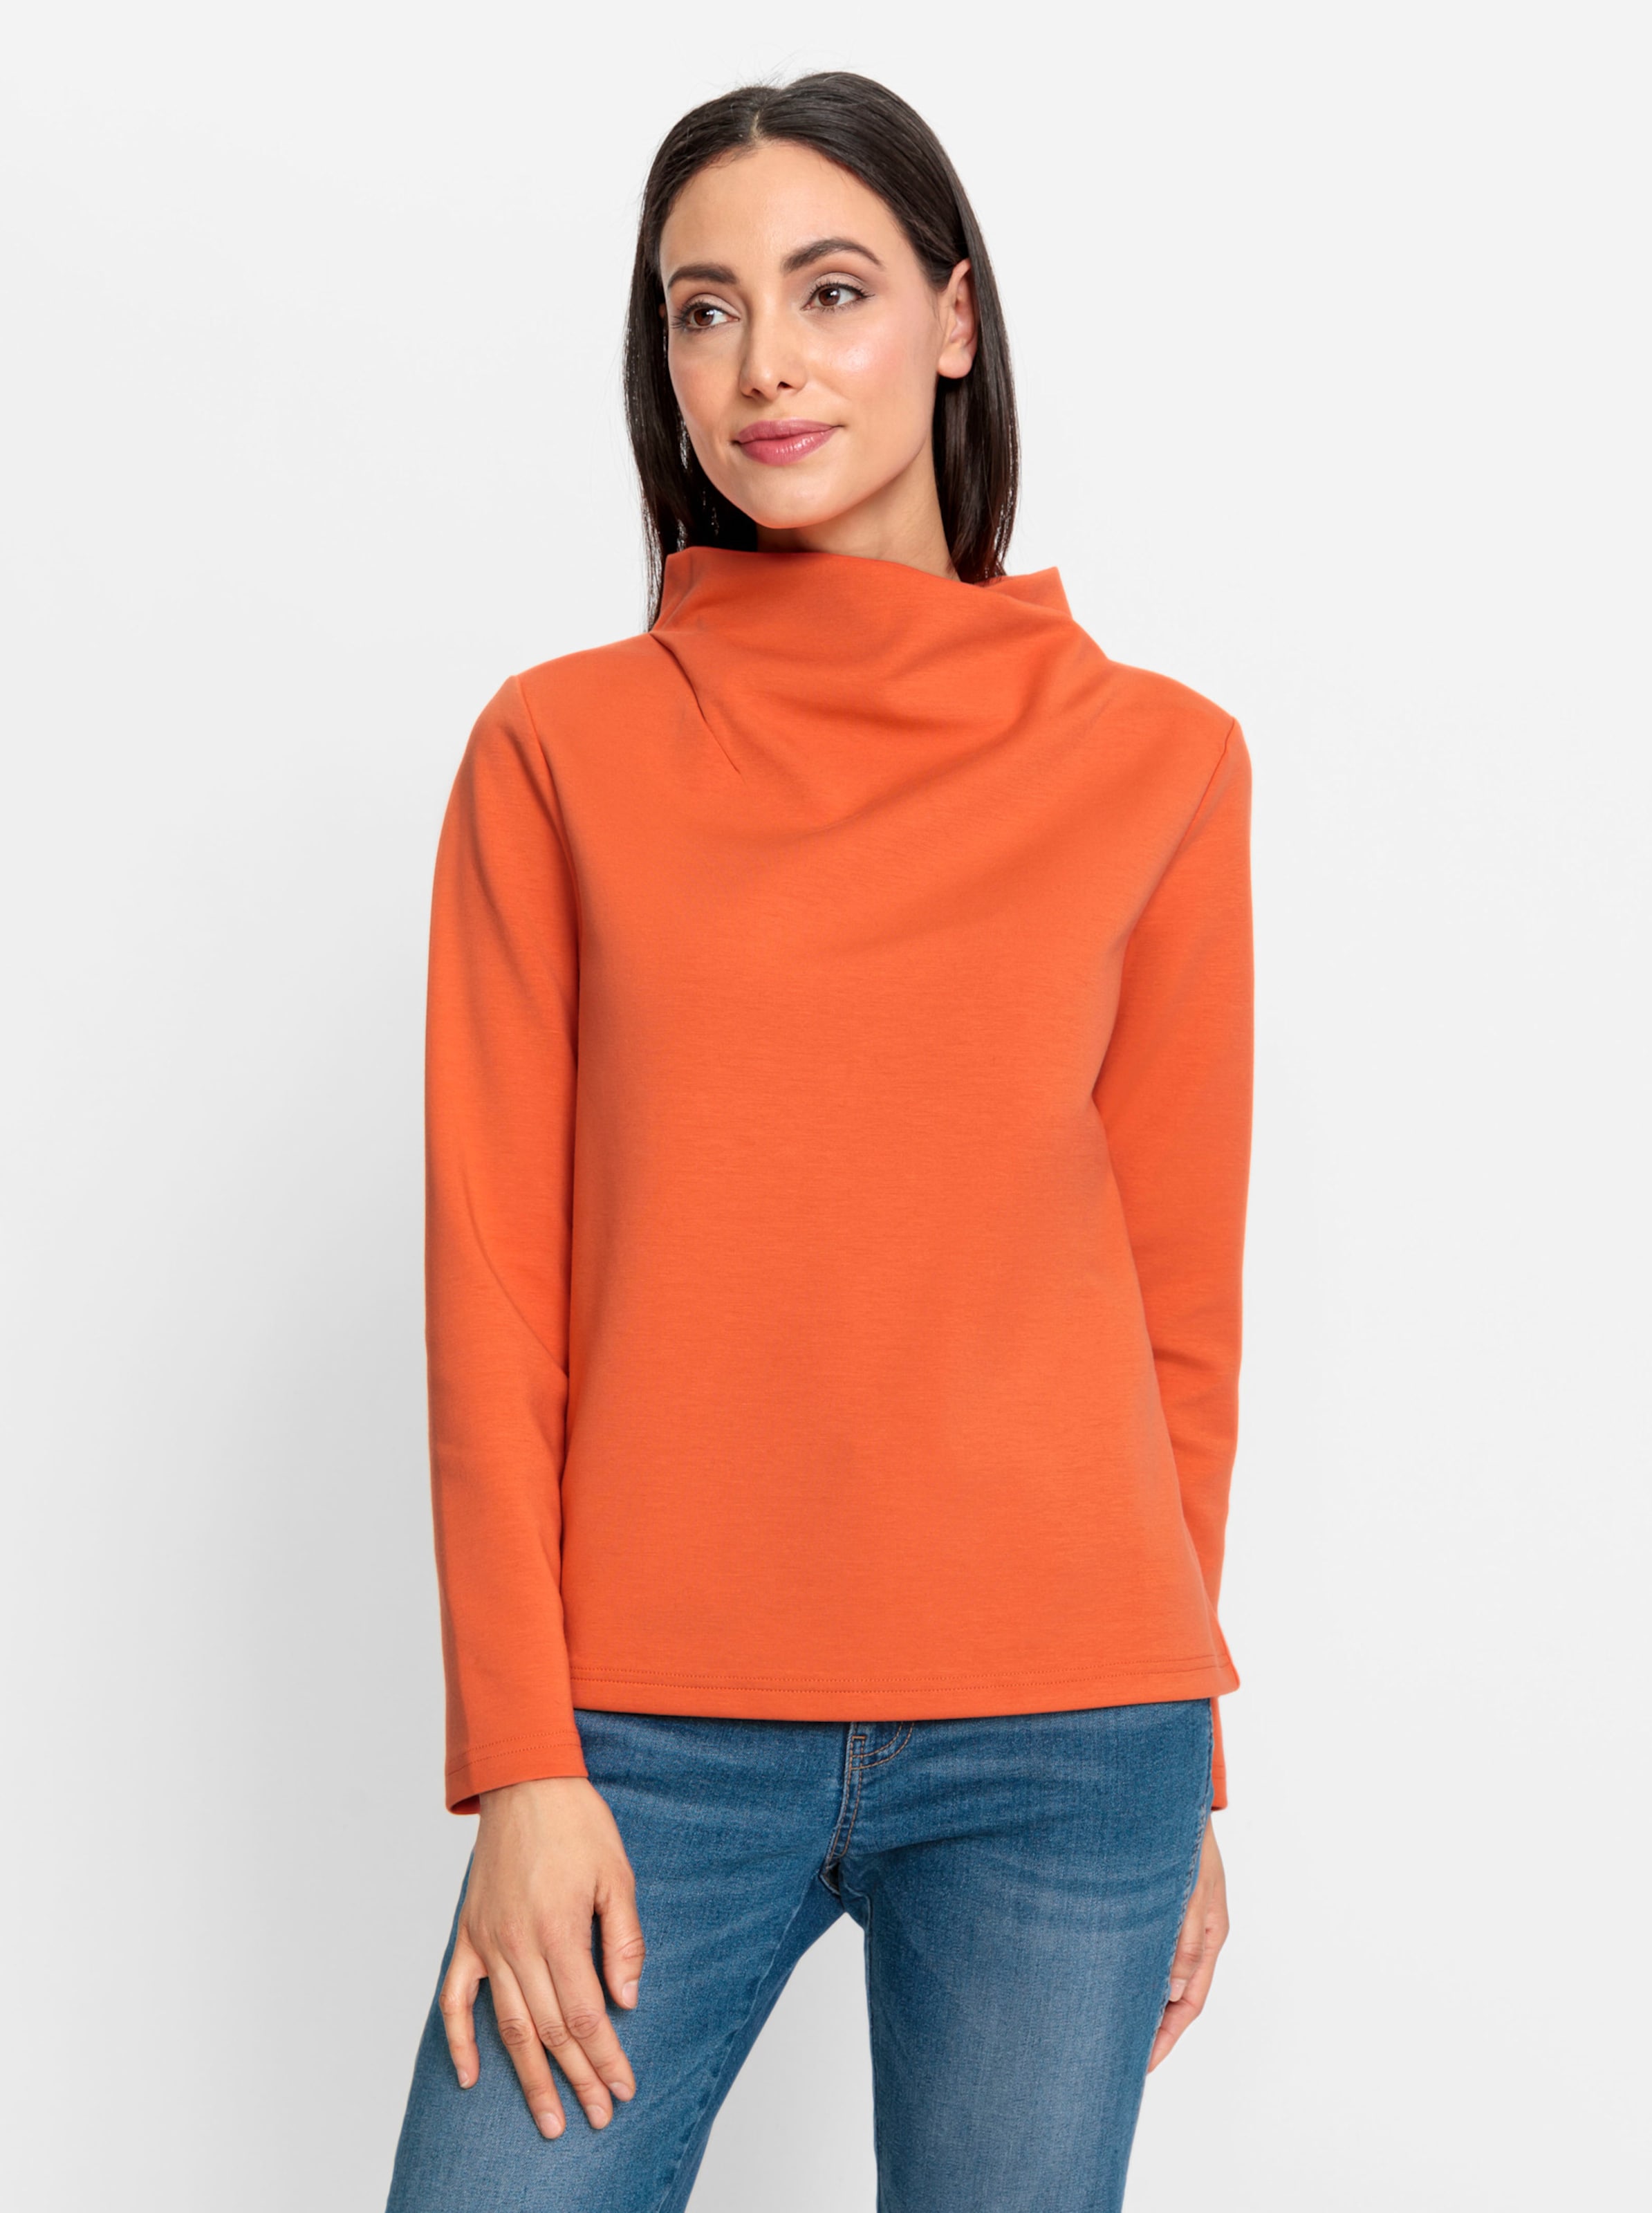 mit Haut günstig Kaufen-Sweatshirt in orange von heine. Sweatshirt in orange von heine <![CDATA[Sweatshirt Raffiniert, mit überlappendem Stehkragen. Gerade Form mit Langarm. Hautsympathische Qualität mit seidig-mattem Glanz.]]>. 